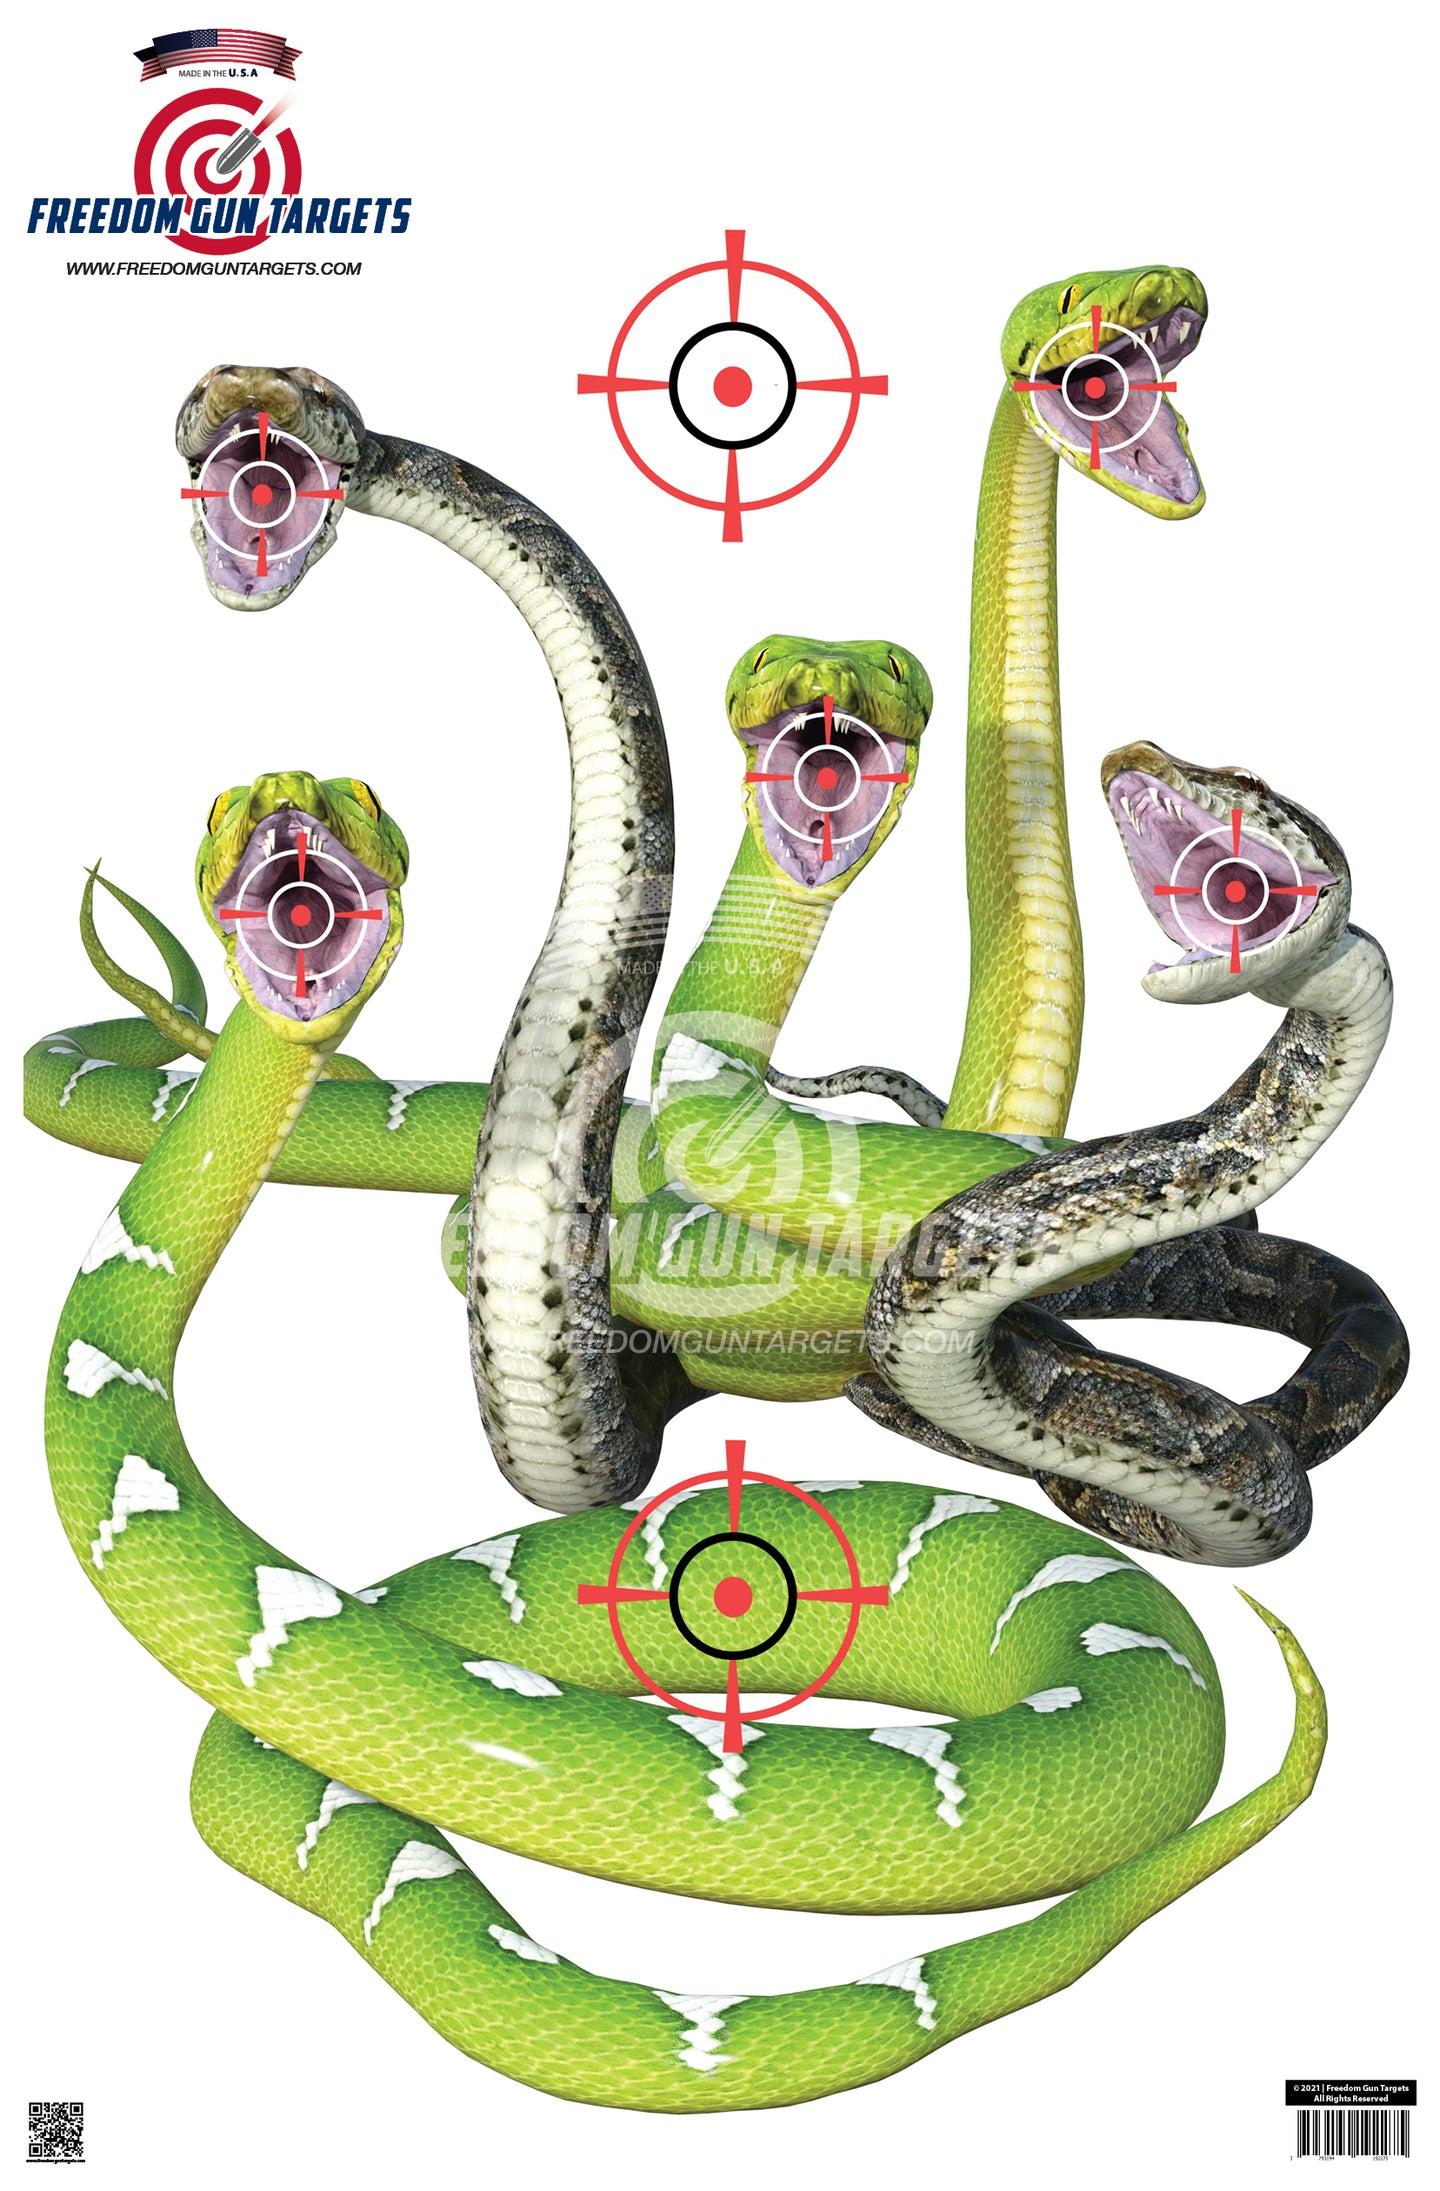 3-D Snake Bite Target 12